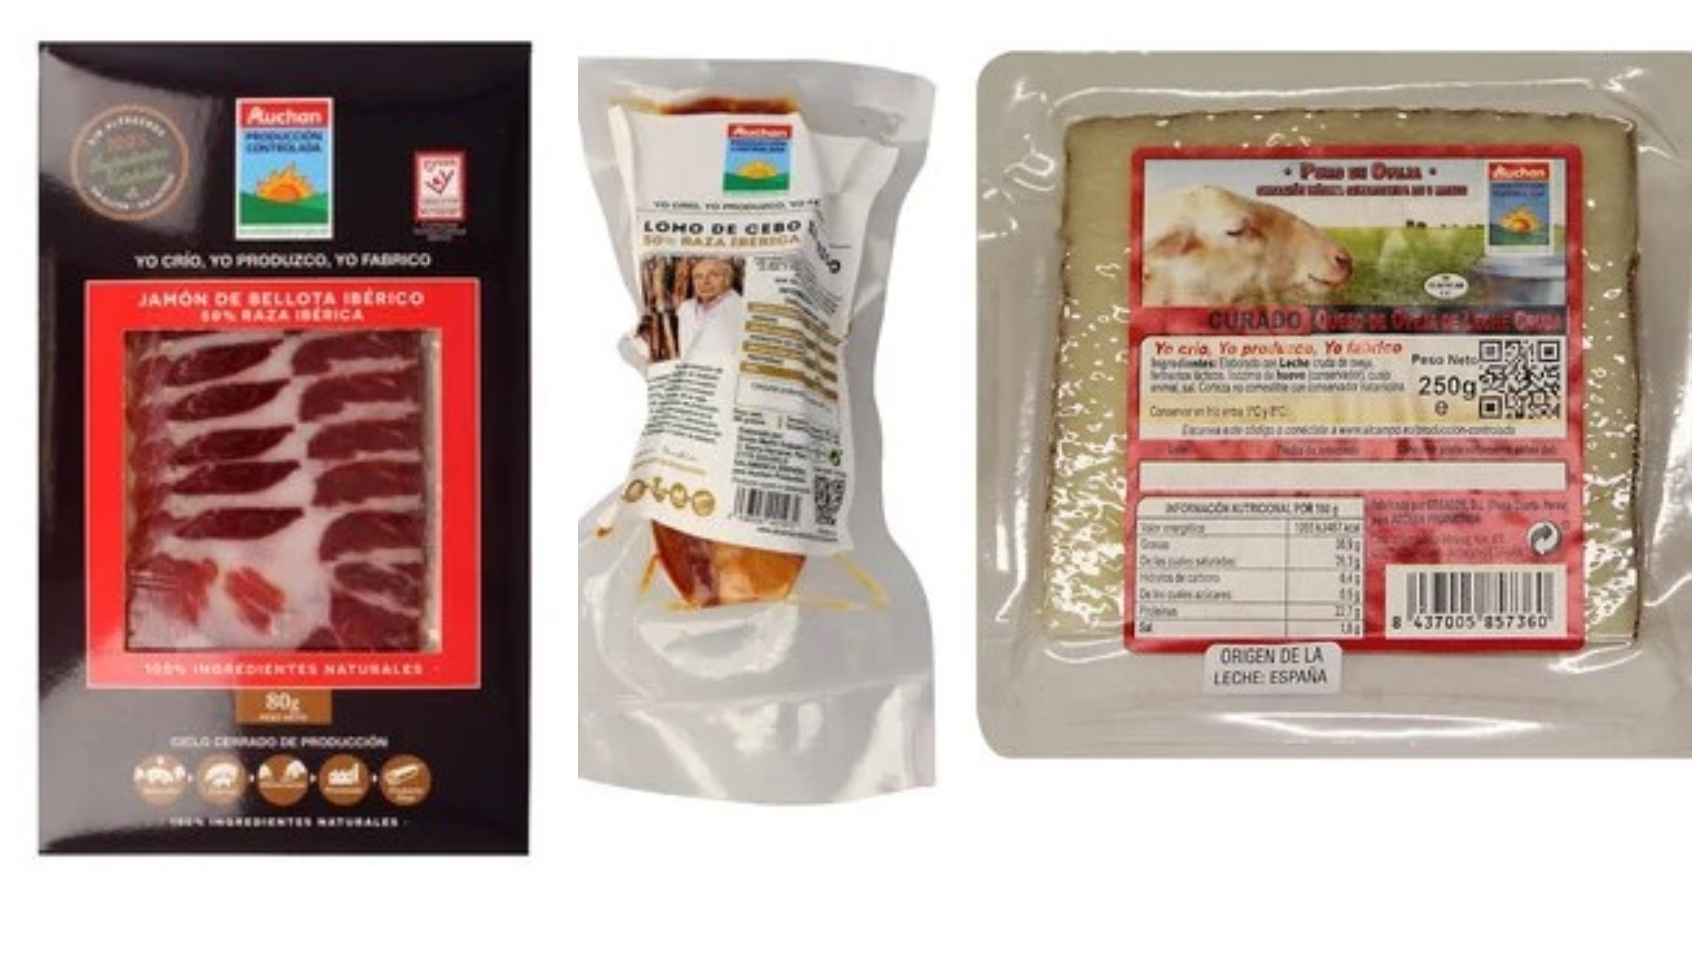 Los productos de Auchan Producción Controlada. De izquierda a derecha: jamón de bellota ibérico, lomo de cebo ibérico y queso de oveja.